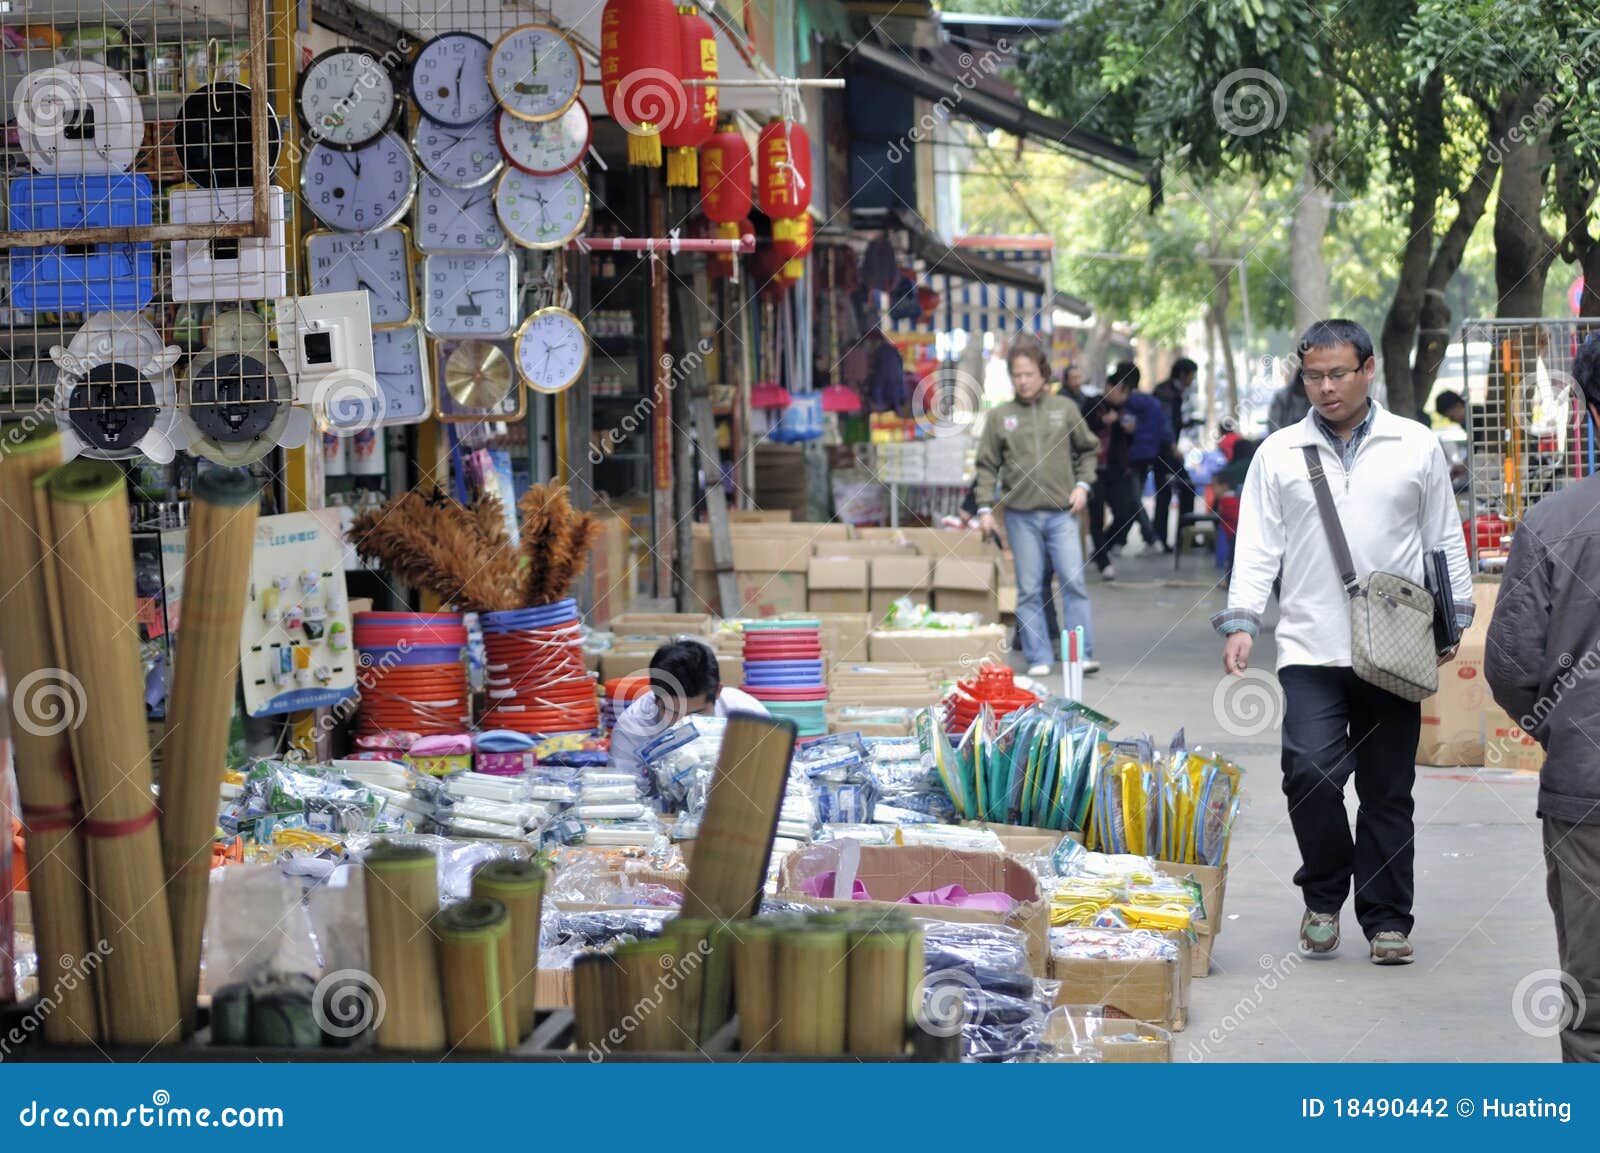 Zhuhai,China:Wholesale Market Editorial Photography - Image: 18490442